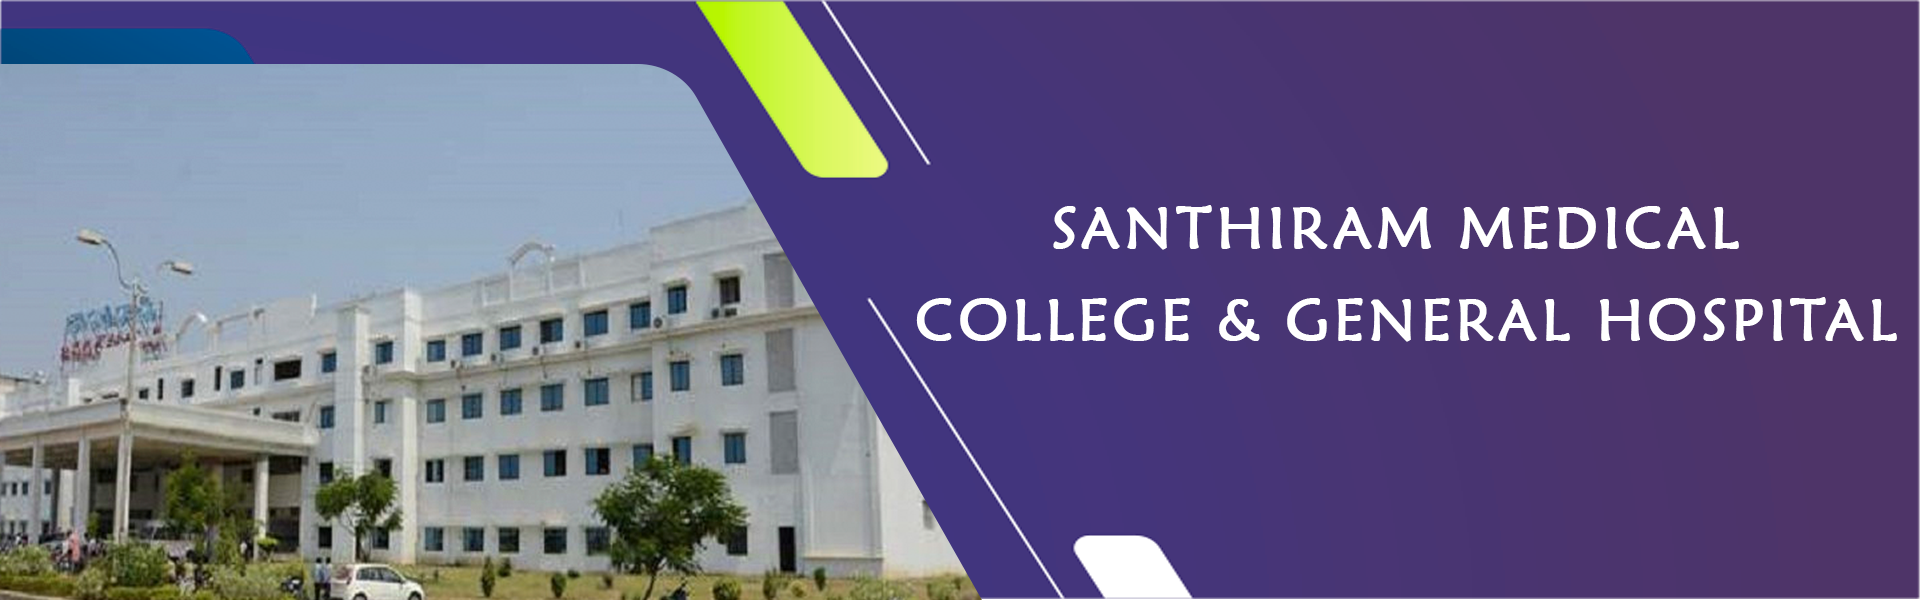 Santhiram medical college & general hospital